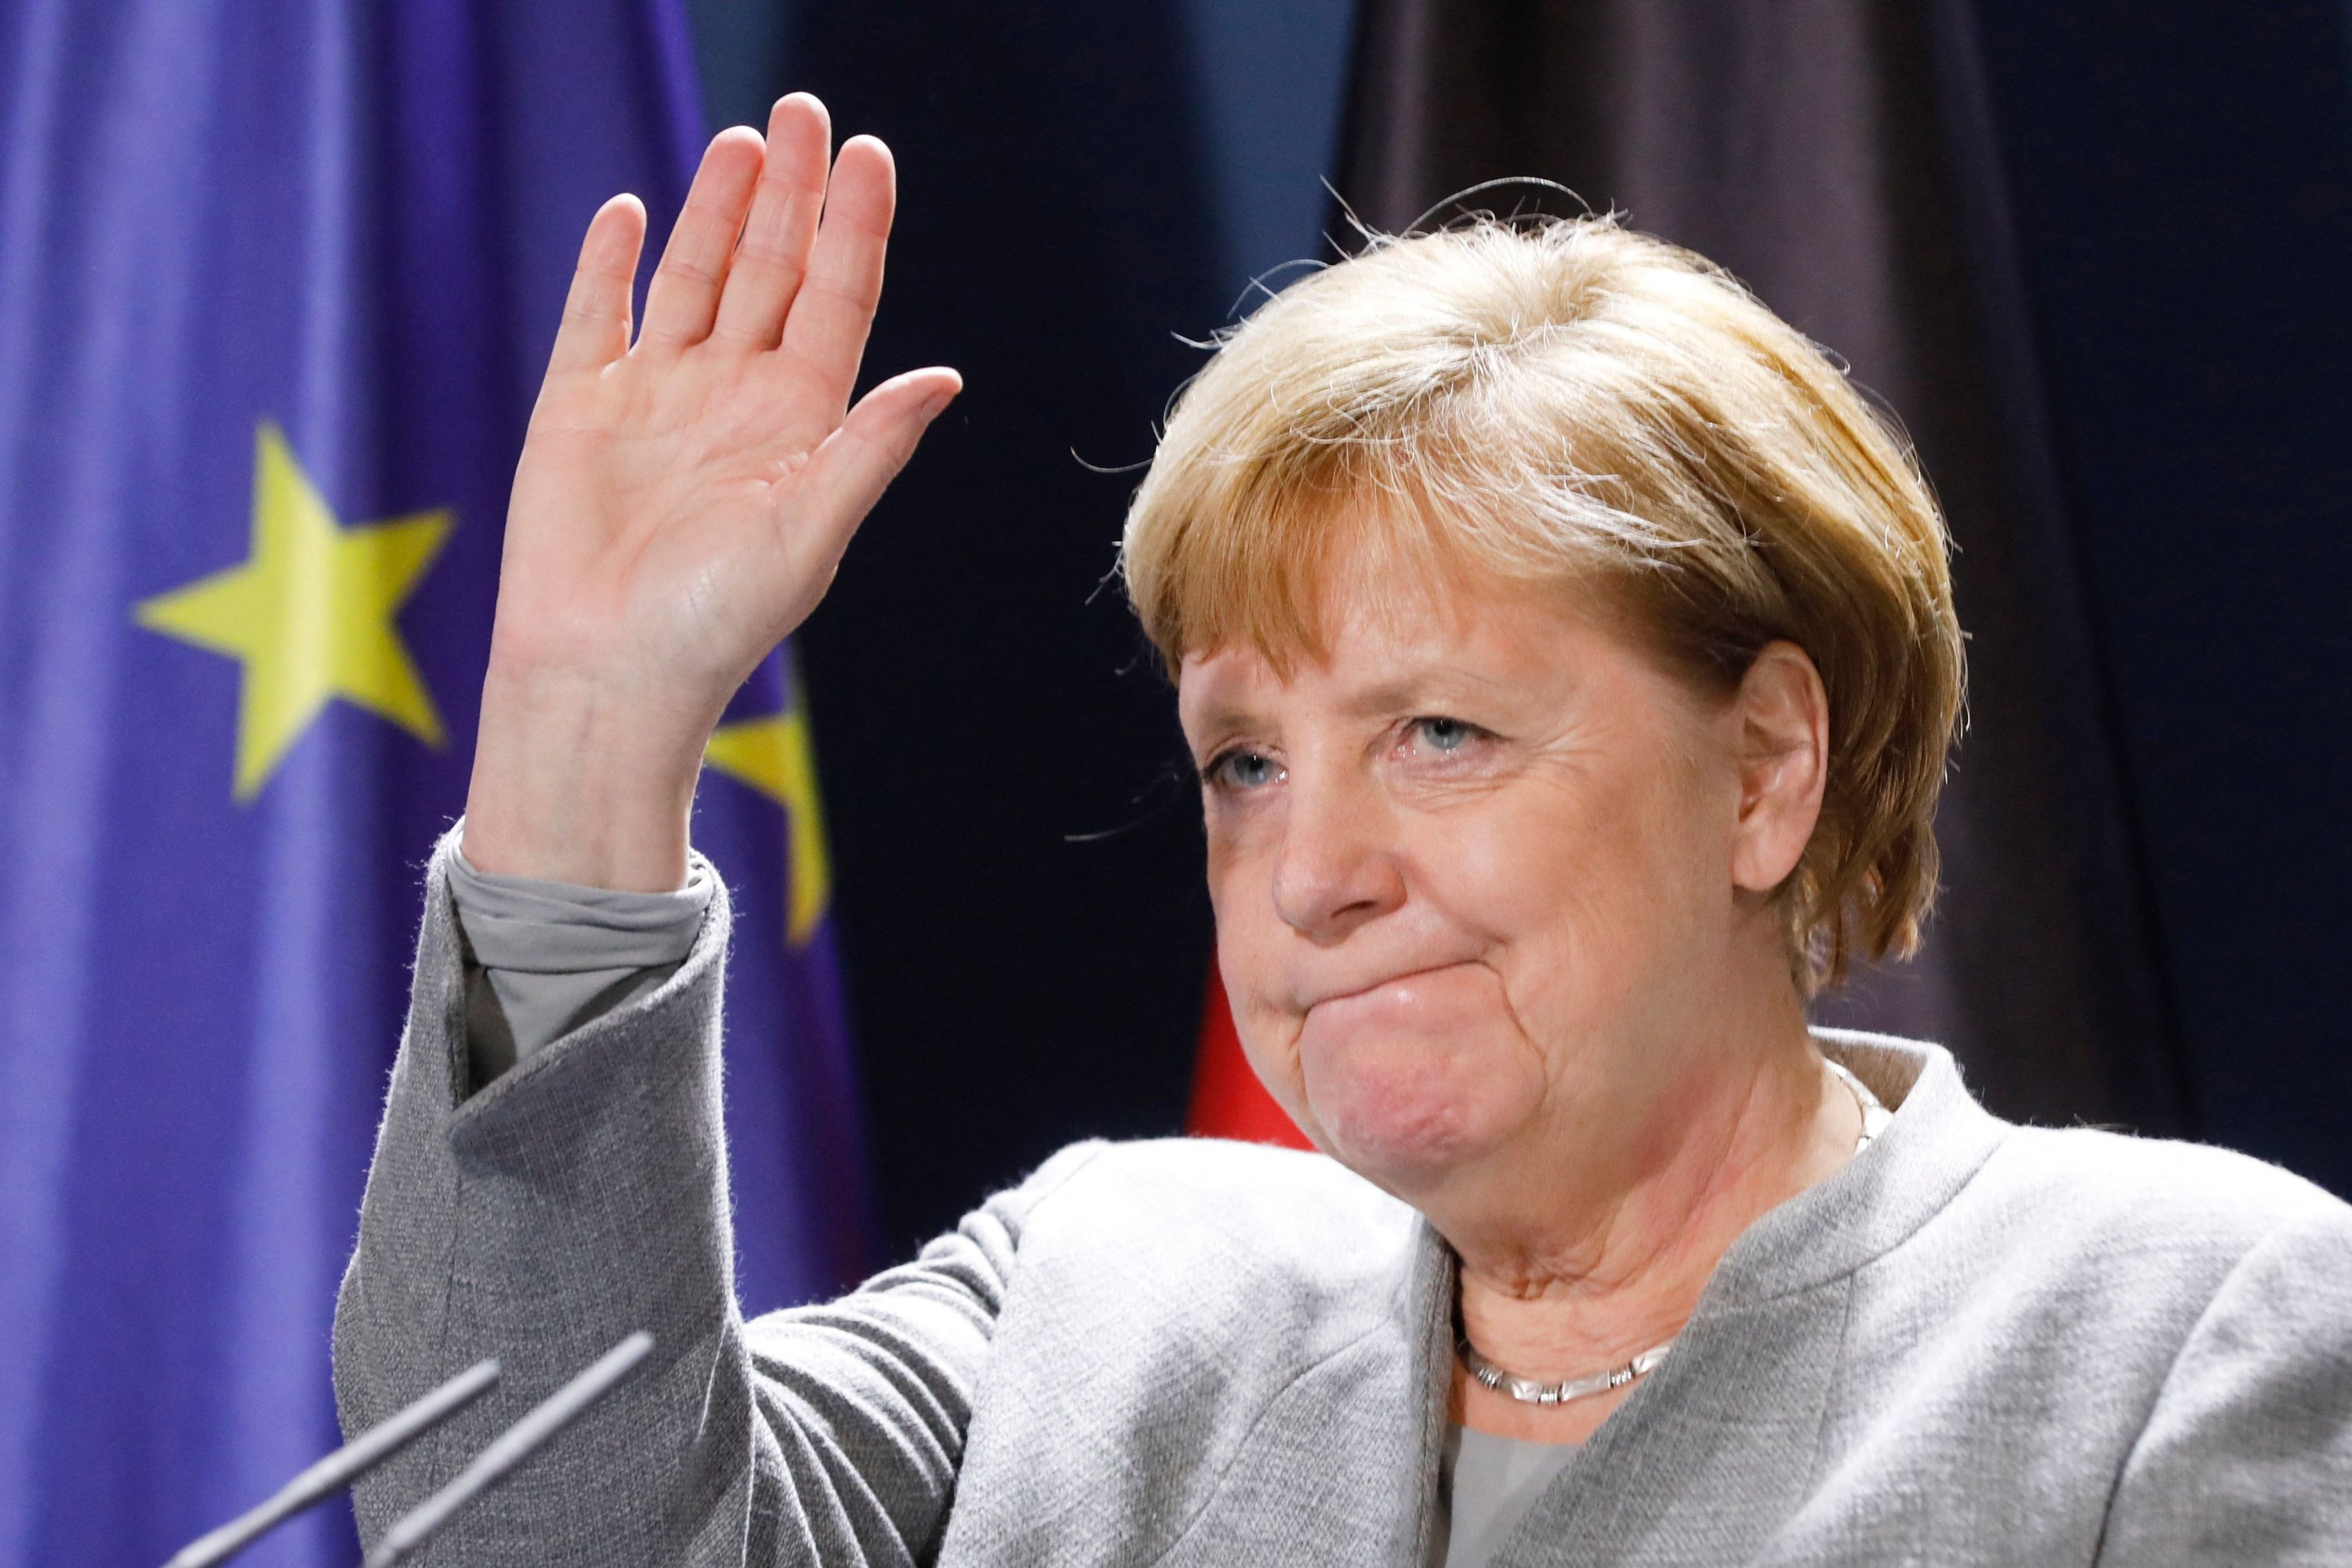 Kanselir Jerman Angela Merkel melambai setelah konferensi pers virtual di Kanselir di Berlin, Jerman, 10 November 2020. (AFP Photo)